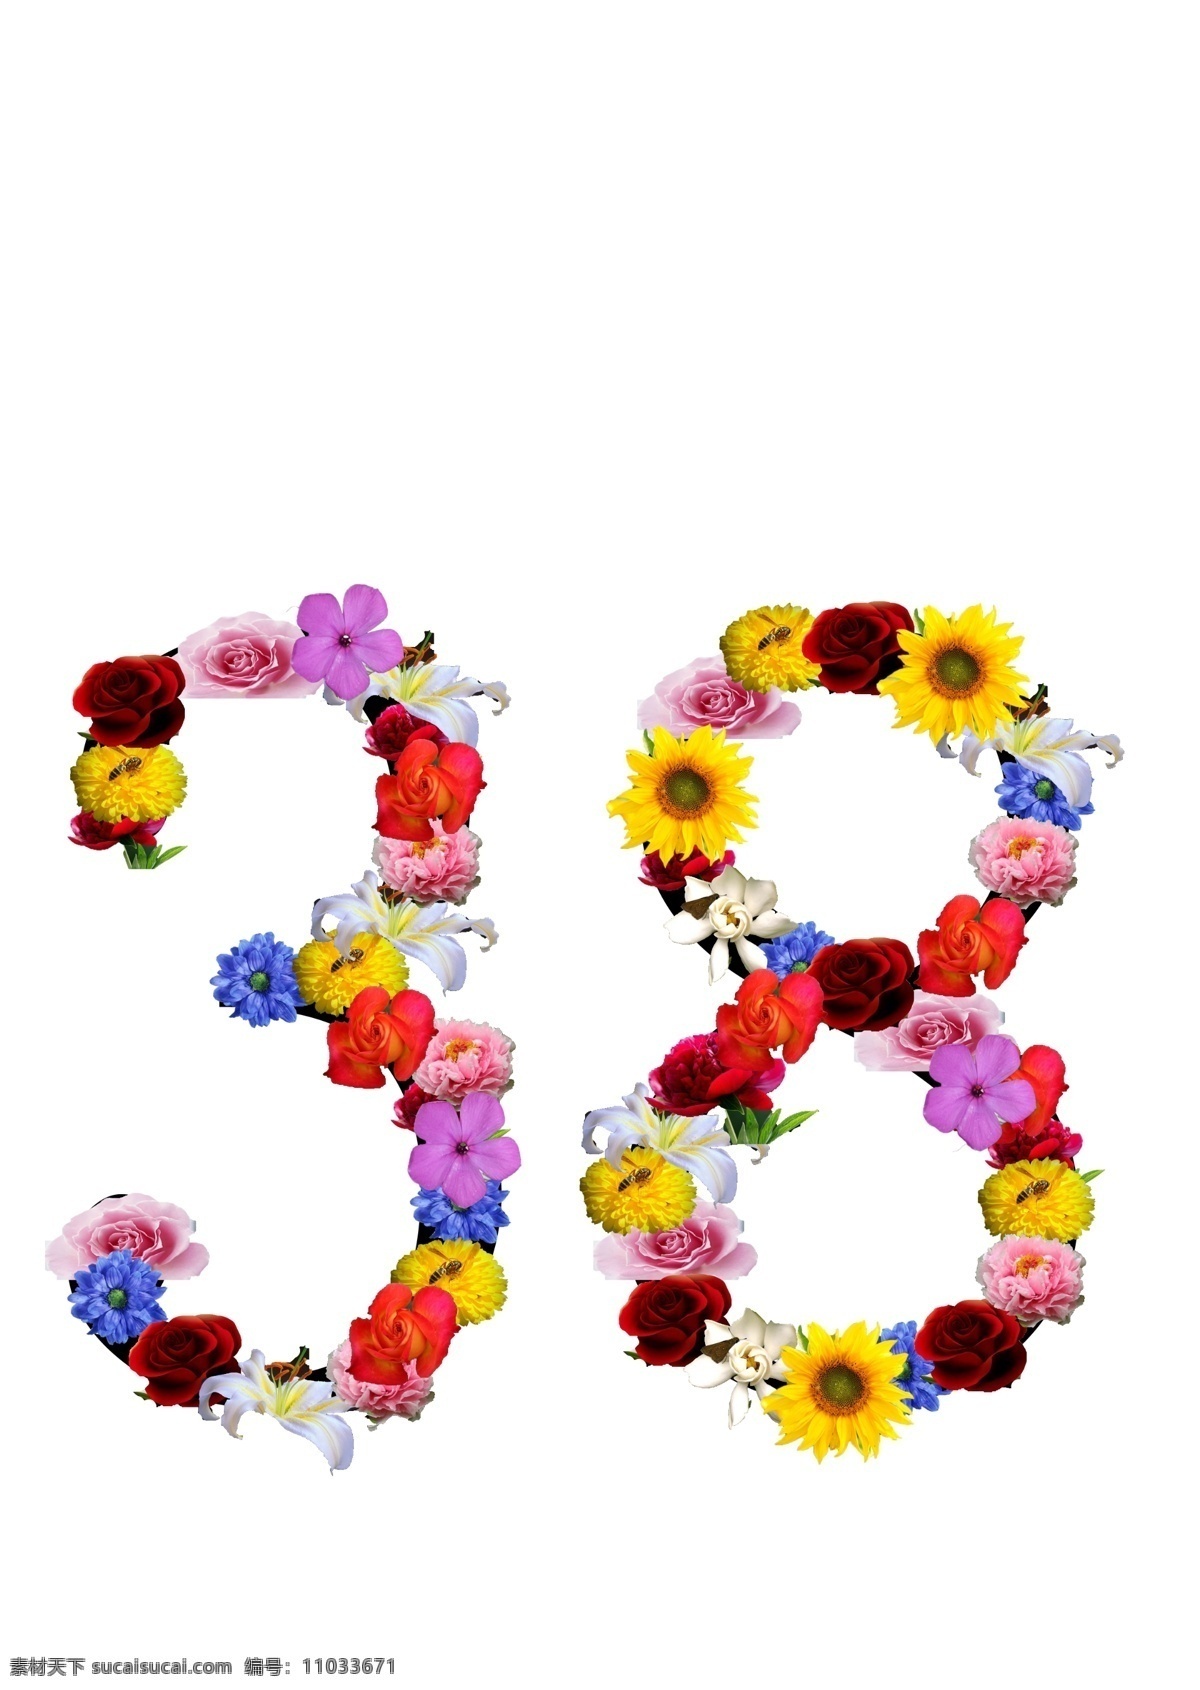 38妇女节 数字 妇女节 节日 意义 鲜花